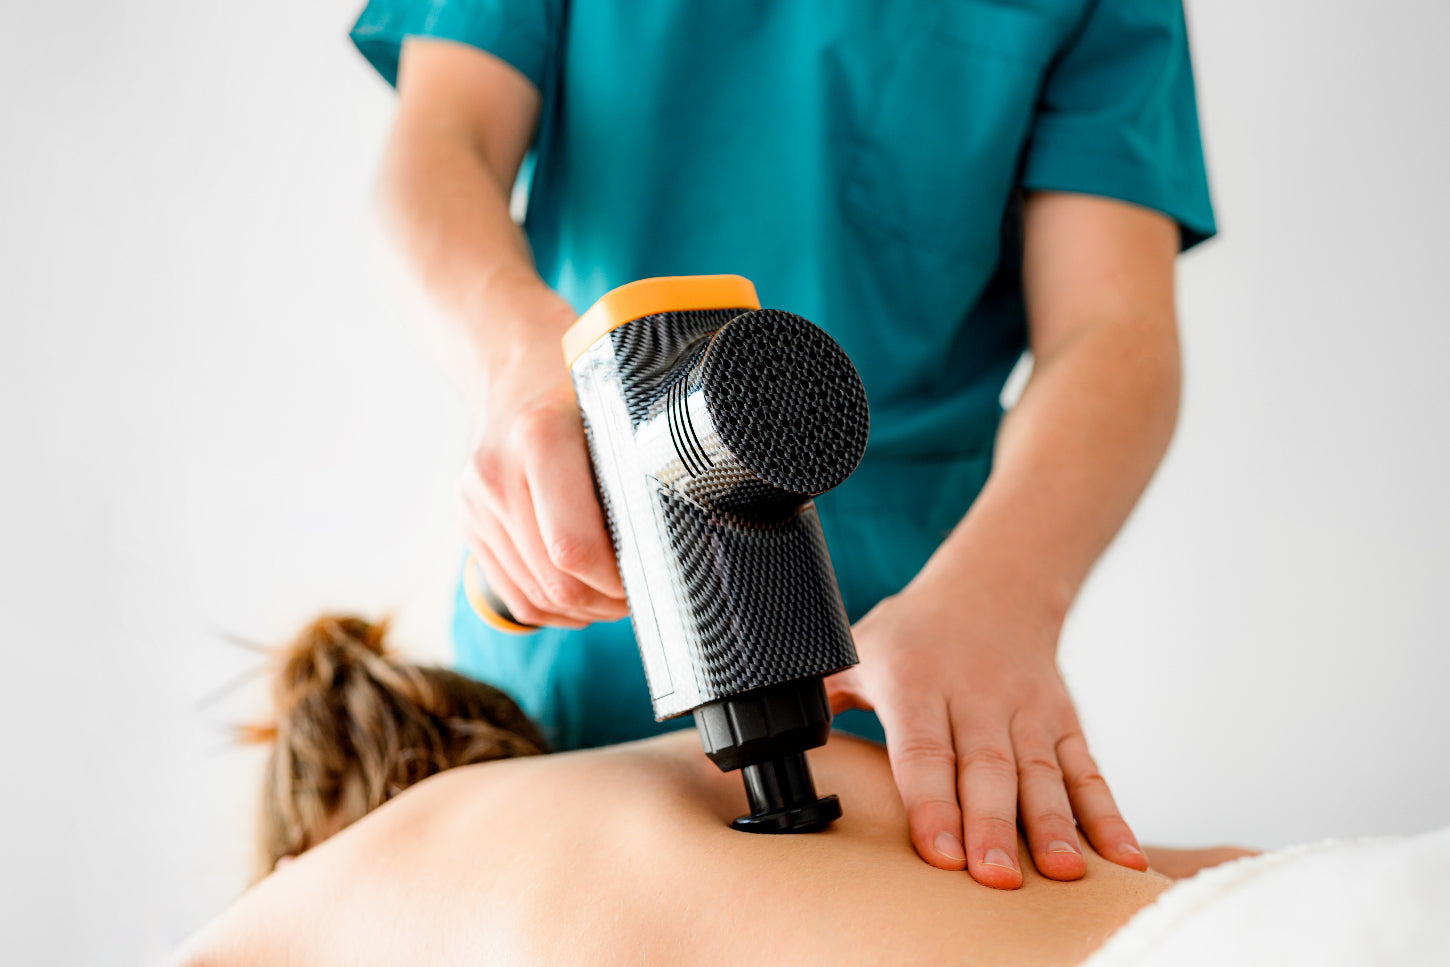 professional-massage-therapist-using-vibration-massage-to-help-healing